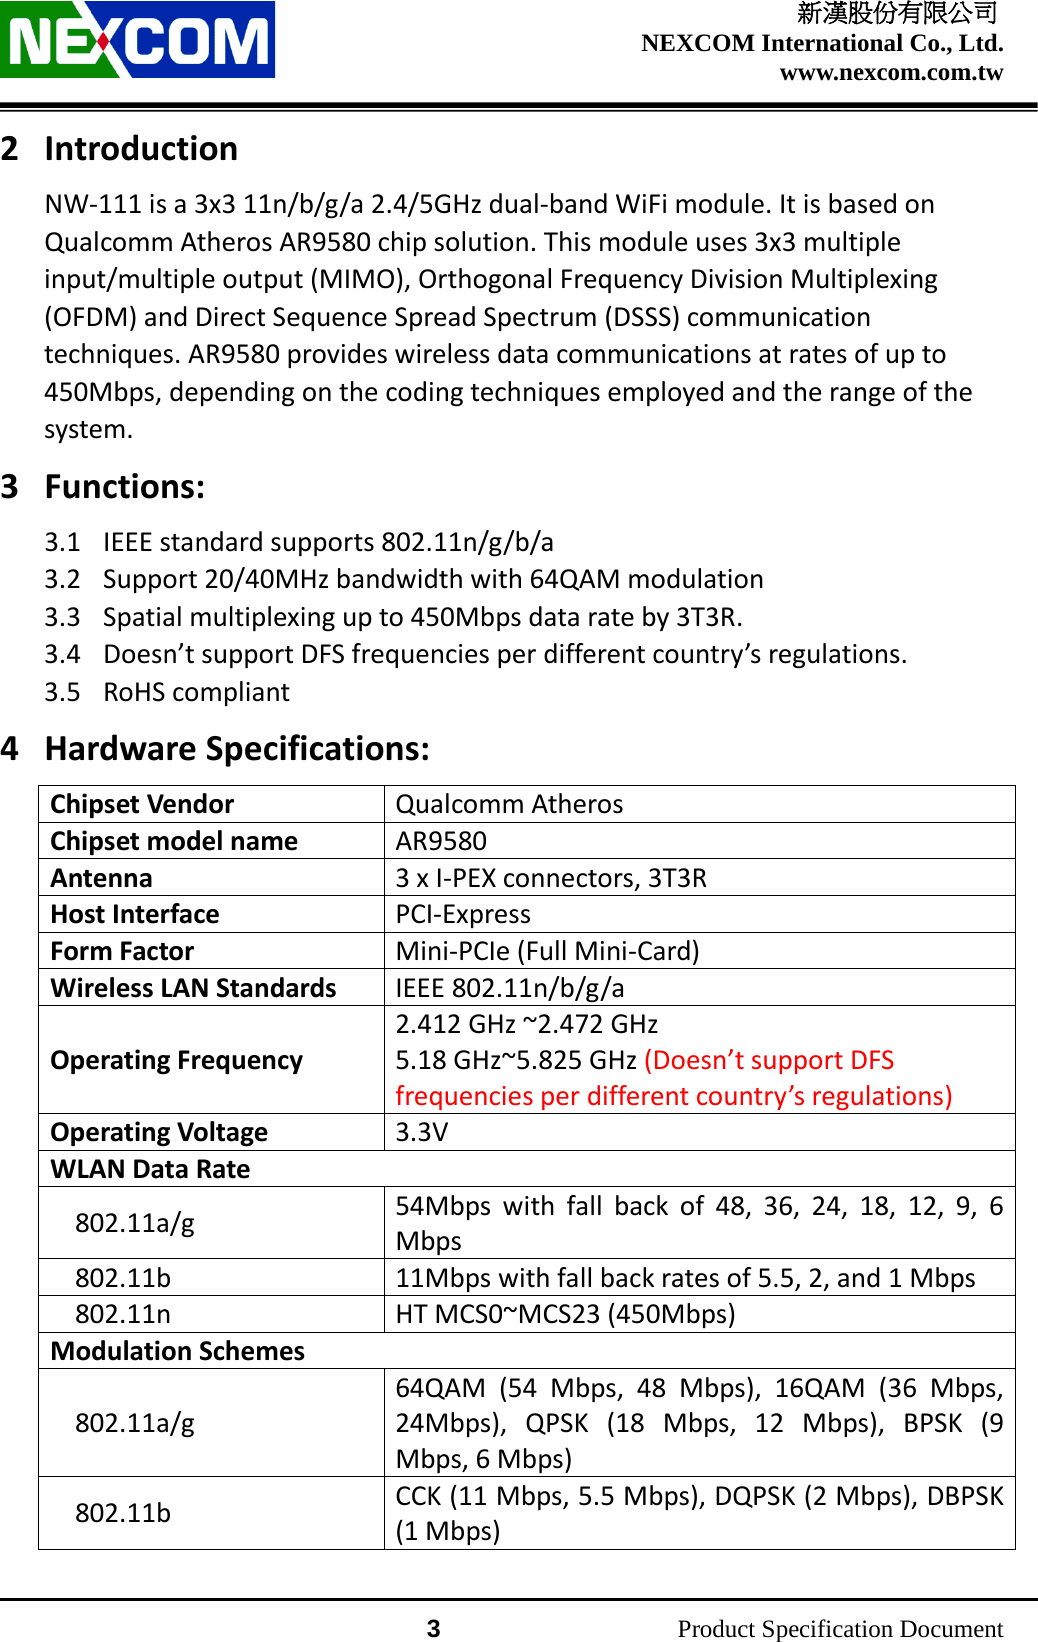    新漢股份有限公司 NEXCOM International Co., Ltd. www.nexcom.com.tw                 3          Product Specification Document 2 Introduction NW-111 is a 3x3 11n/b/g/a 2.4/5GHz dual-band WiFi module. It is based on Qualcomm Atheros AR9580 chip solution. This module uses 3x3 multiple input/multiple output (MIMO), Orthogonal Frequency Division Multiplexing (OFDM) and Direct Sequence Spread Spectrum (DSSS) communication techniques. AR9580 provides wireless data communications at rates of up to 450Mbps, depending on the coding techniques employed and the range of the system. 3 Functions: 3.1 IEEE standard supports 802.11n/g/b/a 3.2 Support 20/40MHz bandwidth with 64QAM modulation 3.3 Spatial multiplexing up to 450Mbps data rate by 3T3R. 3.4 Doesn’t support DFS frequencies per different country’s regulations. 3.5 RoHS compliant 4 Hardware Specifications: Chipset Vendor Qualcomm Atheros Chipset model name AR9580 Antenna 3 x I-PEX connectors, 3T3R Host Interface PCI-Express Form Factor Mini-PCIe (Full Mini-Card) Wireless LAN Standards IEEE 802.11n/b/g/a Operating Frequency 2.412 GHz ~2.472 GHz 5.18 GHz~5.825 GHz (Doesn’t support DFS frequencies per different country’s regulations) Operating Voltage 3.3V WLAN Data Rate 802.11a/g 54Mbps with fall back of 48, 36, 24, 18, 12, 9, 6 Mbps 802.11b 11Mbps with fall back rates of 5.5, 2, and 1 Mbps 802.11n HT MCS0~MCS23 (450Mbps) Modulation Schemes 802.11a/g 64QAM (54 Mbps, 48 Mbps), 16QAM (36 Mbps, 24Mbps), QPSK (18 Mbps, 12 Mbps), BPSK (9 Mbps, 6 Mbps) 802.11b CCK (11 Mbps, 5.5 Mbps), DQPSK (2 Mbps), DBPSK (1 Mbps) 